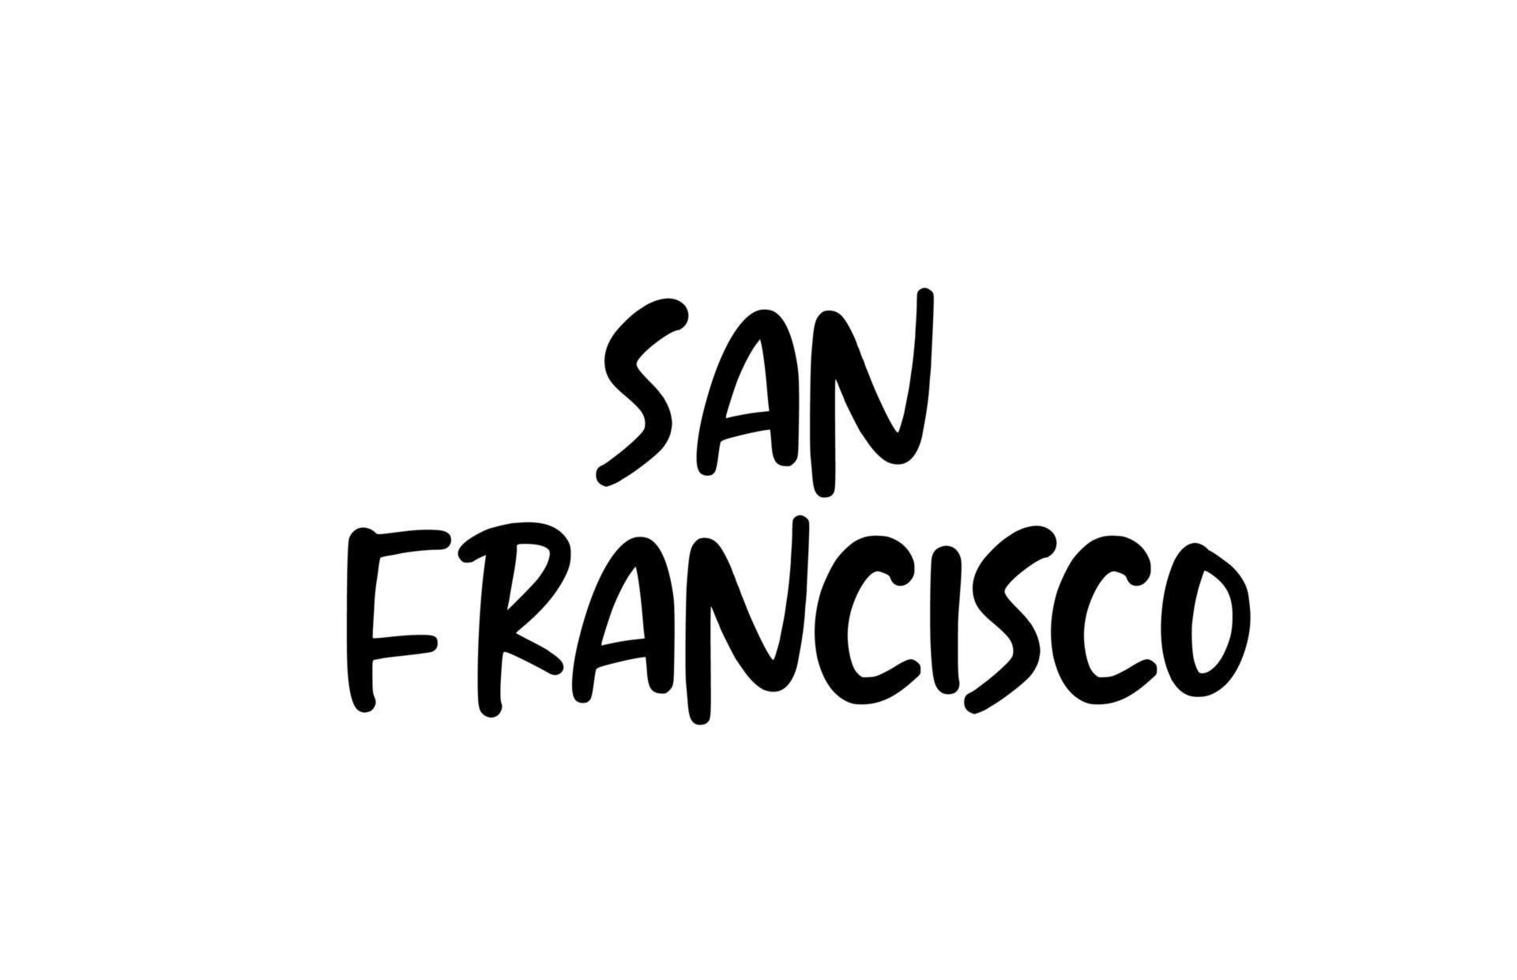 San Francisco City tipografía manuscrita palabra texto letras a mano. texto de caligrafía moderna. de color negro vector